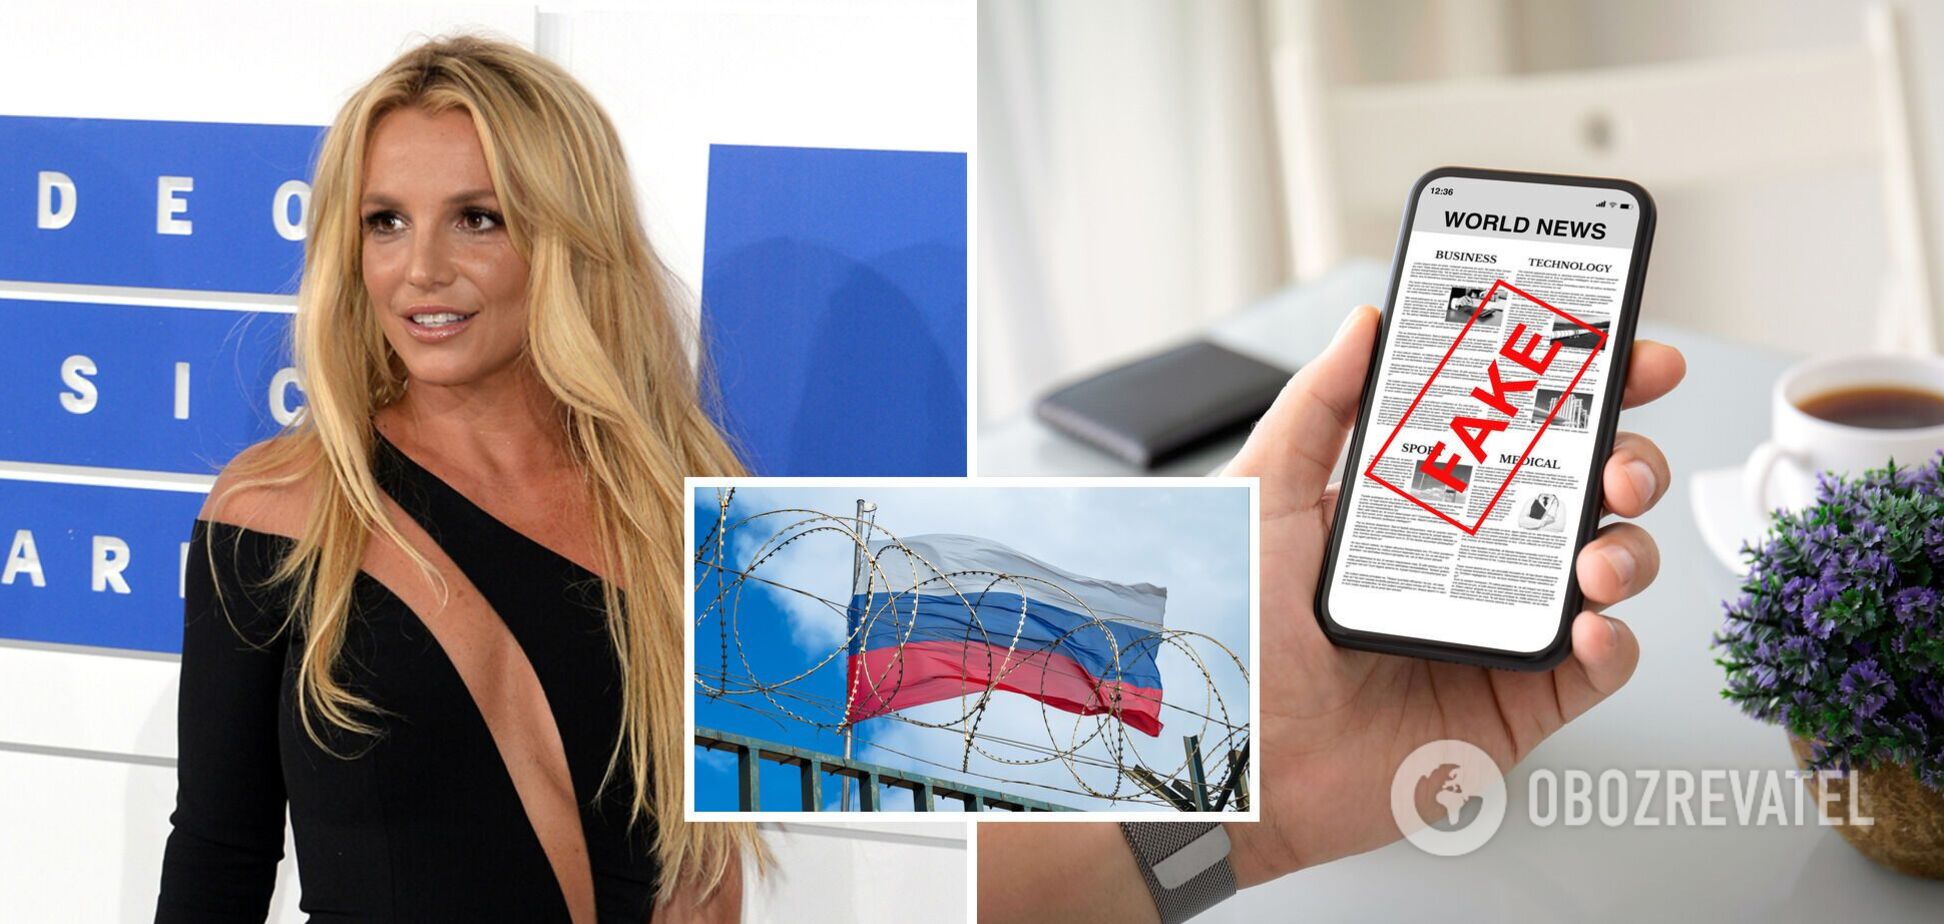 РосЗМІ запустили фейк про те, що Брітні Спірс підтримала Росію, тому її заблокували в Instagram: чому це неправда